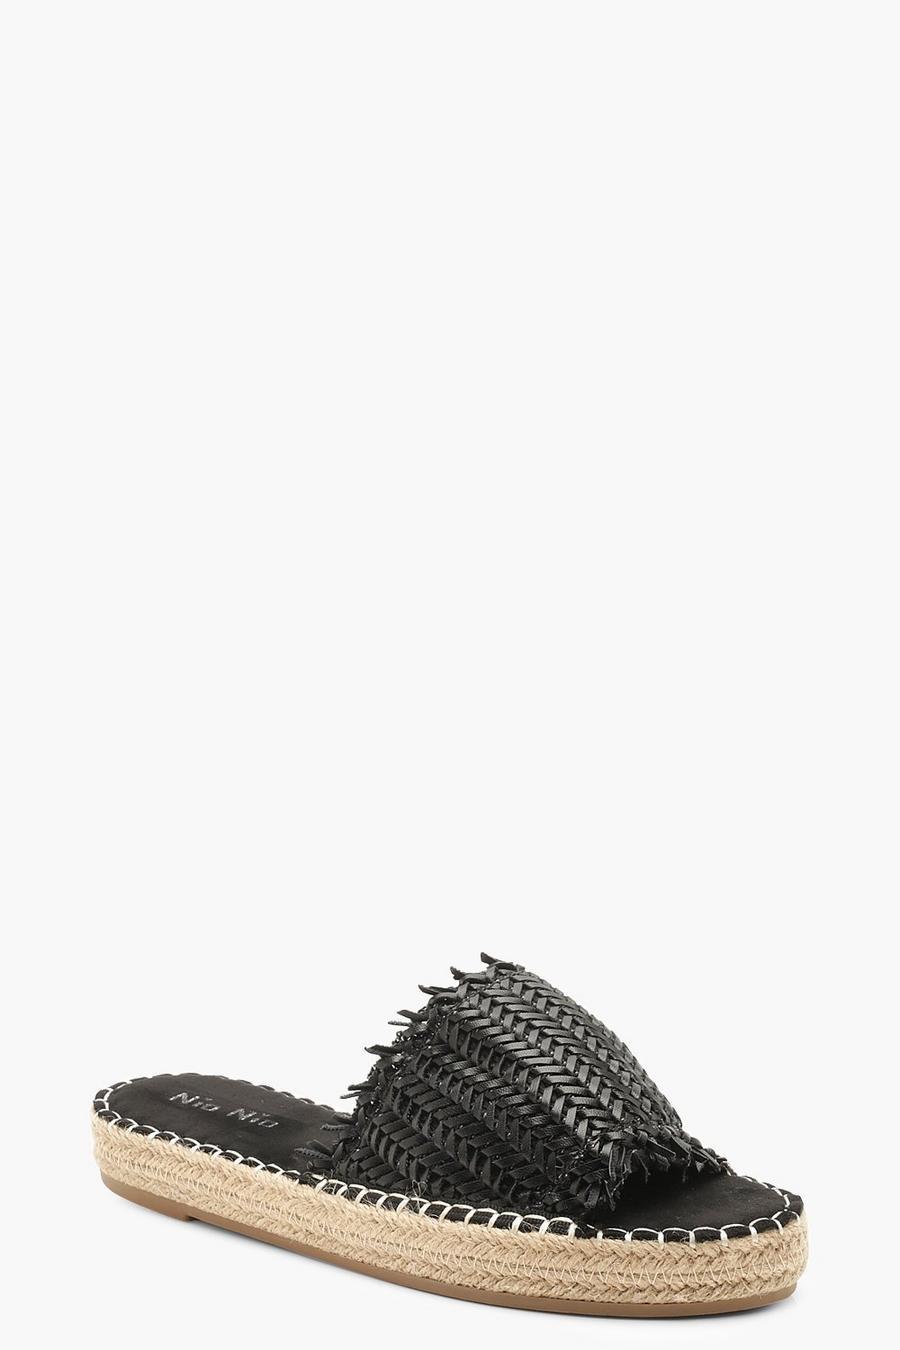 Zapatillas de alpargata tejidas, Negro image number 1